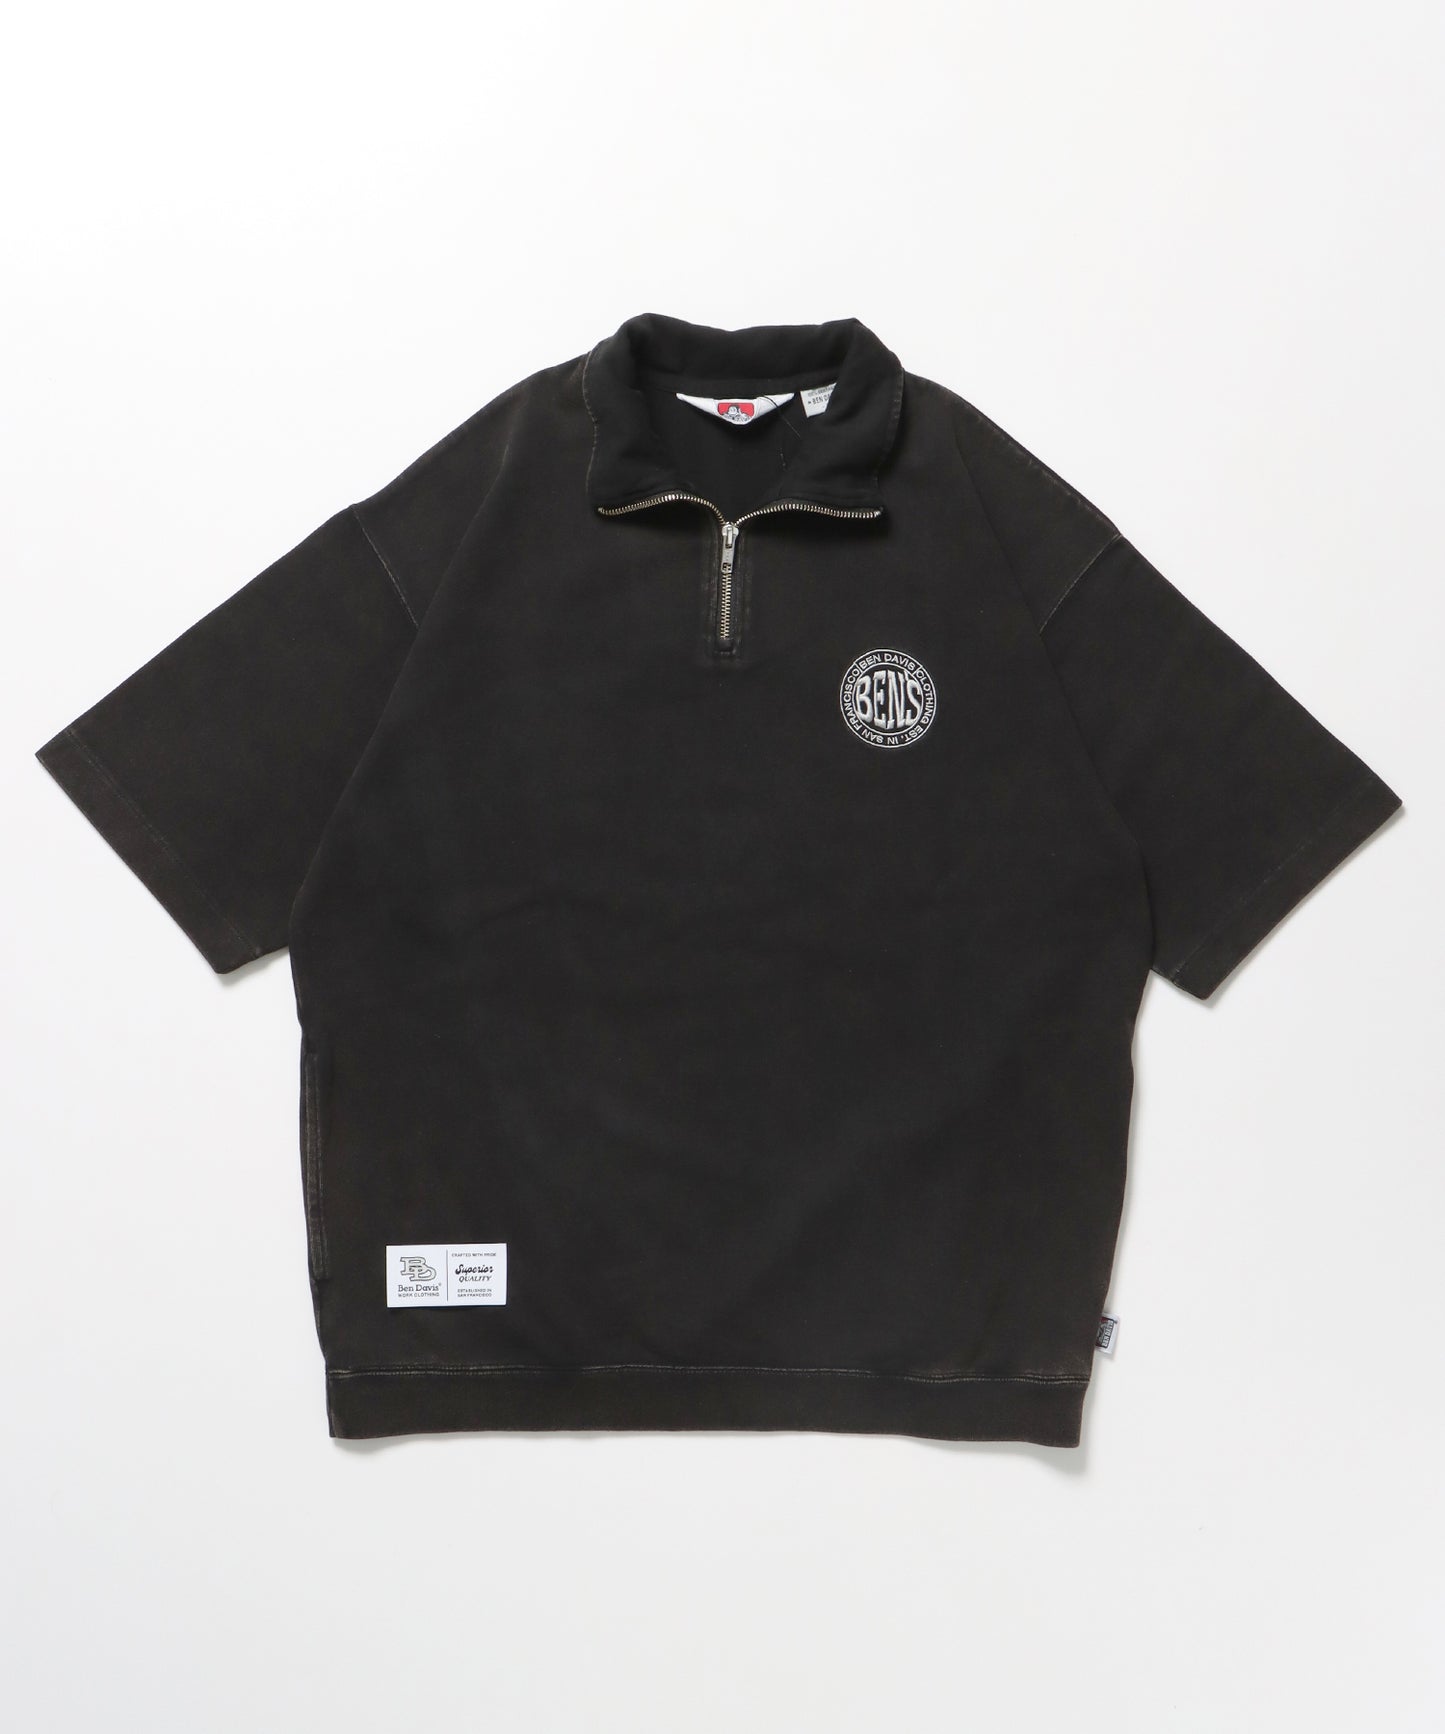 CIRCLE LOGO VNTG 1/4 ZIP TOP / サークルロゴ Tシャツ ハーフジップ パウダーブリーチ 刺繍 半袖 ブラック